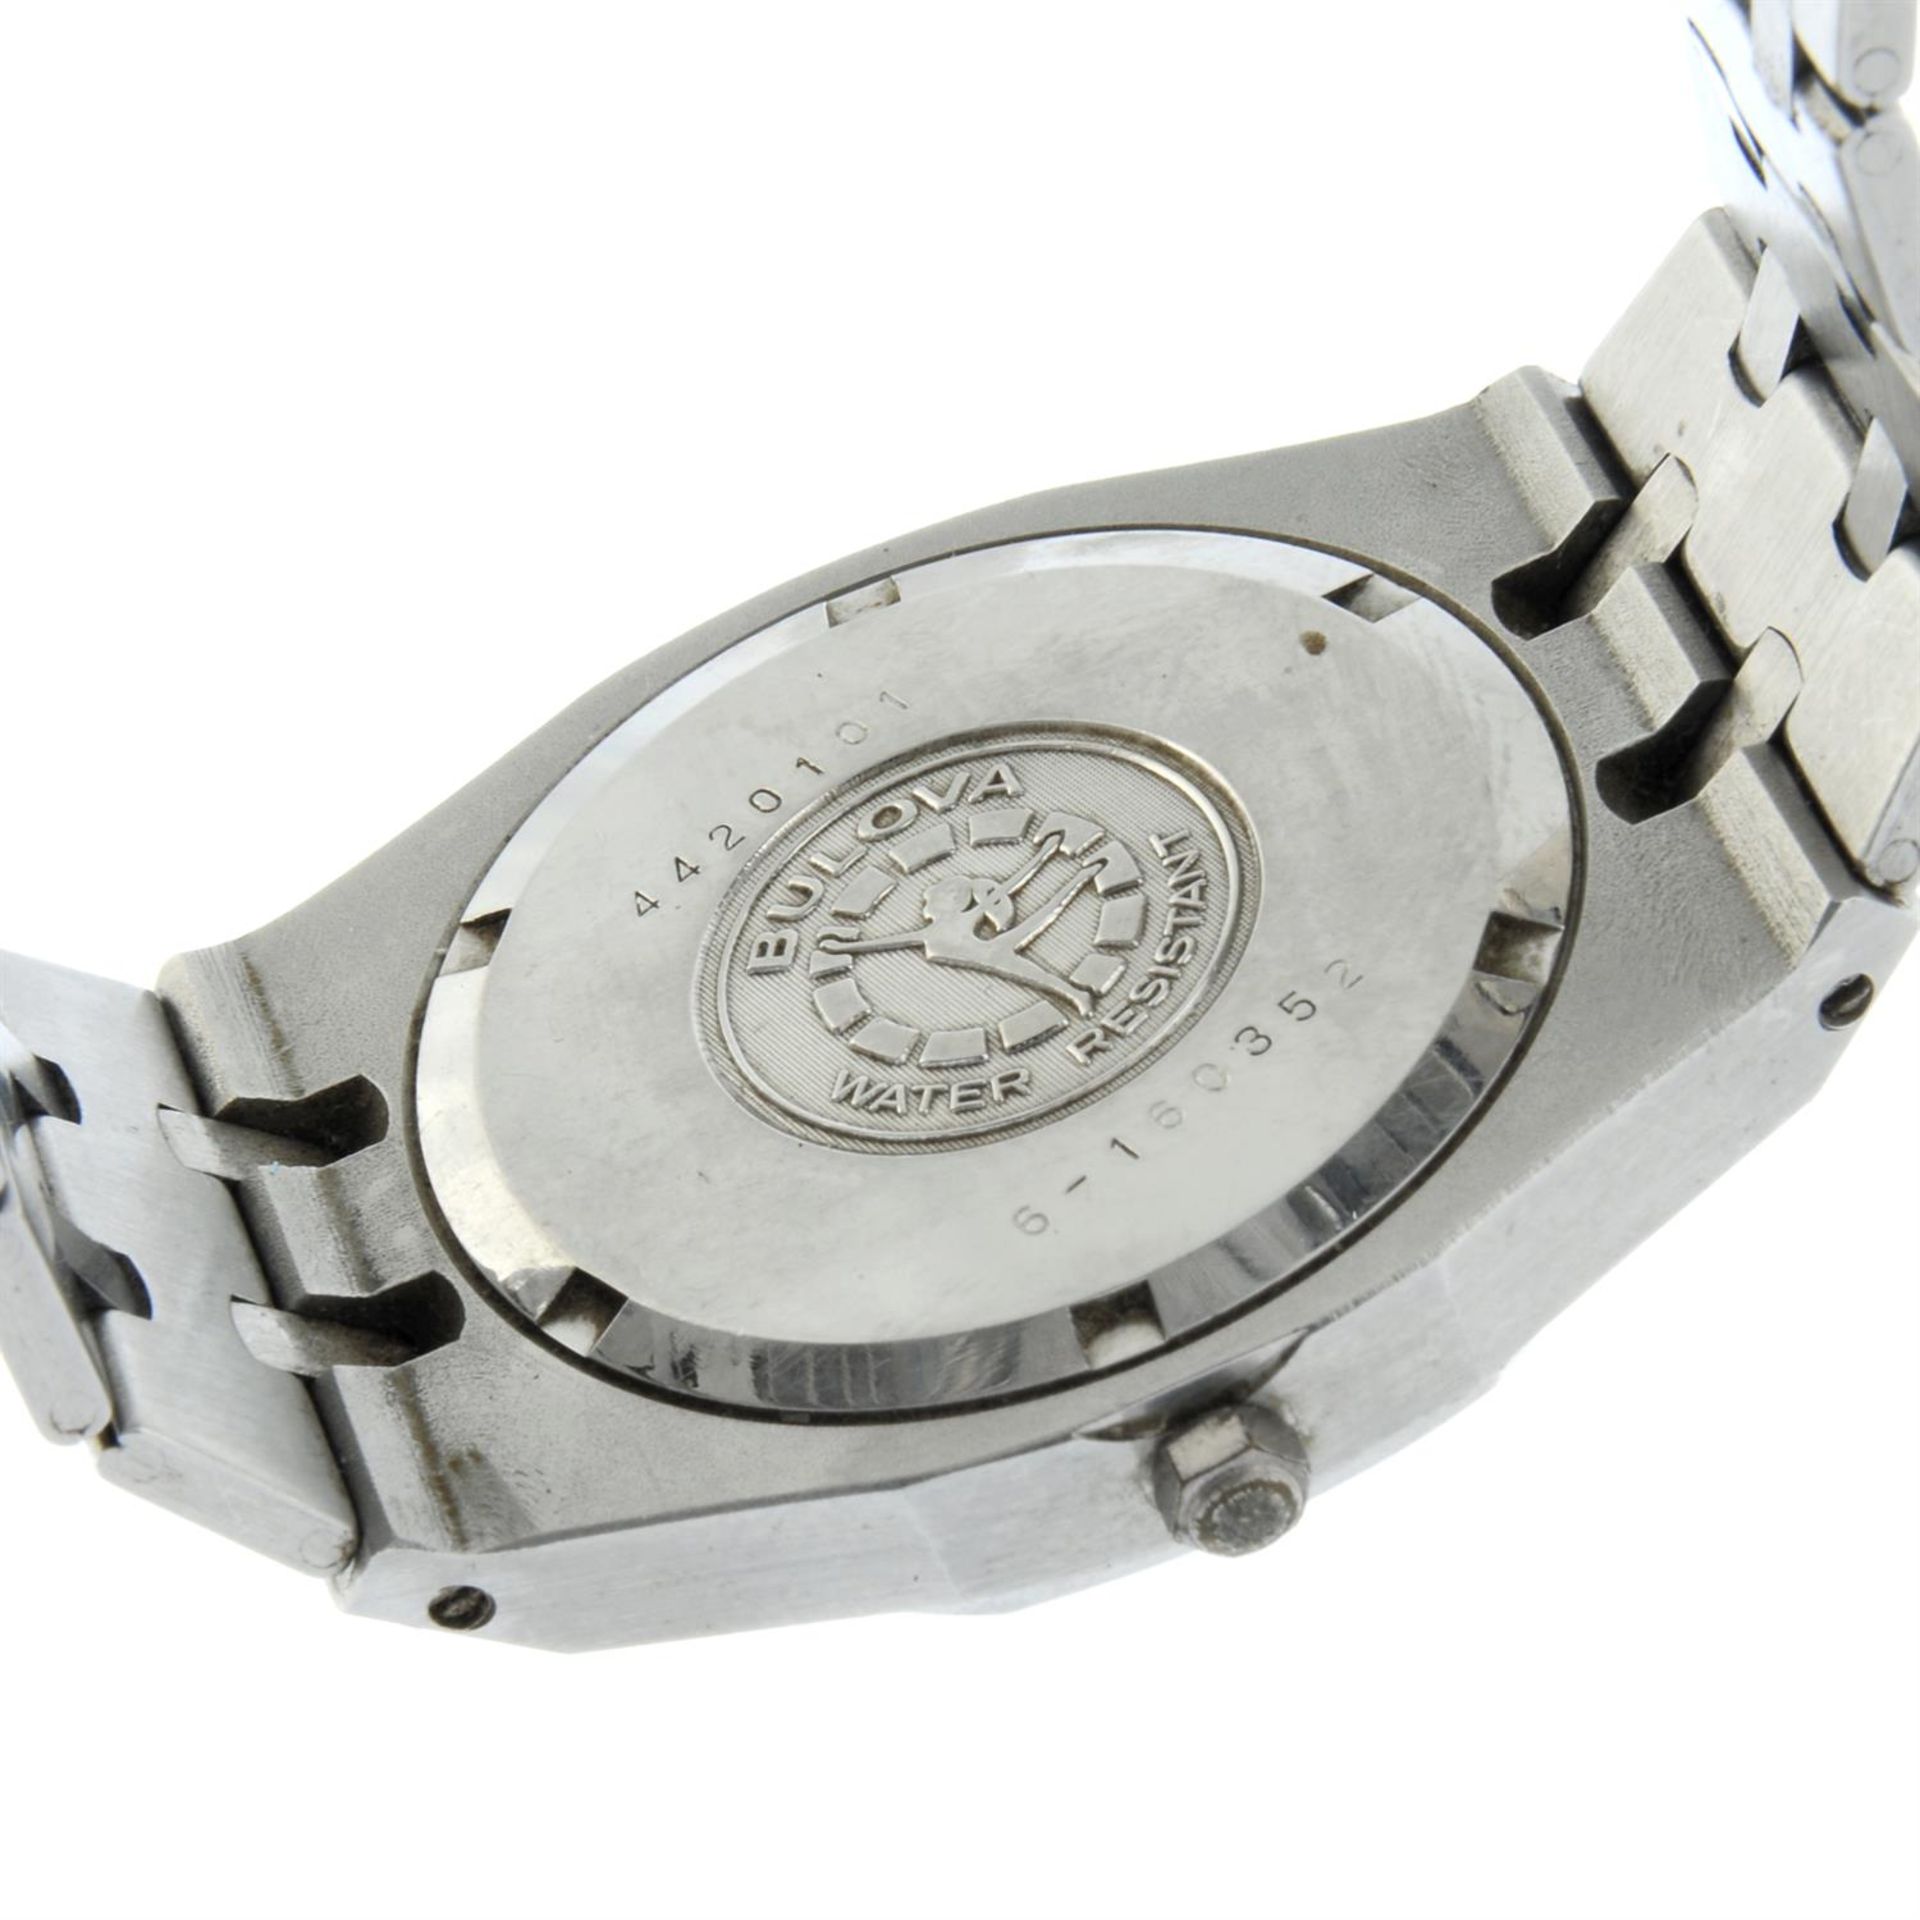 Bulova - a 'Royal Oak' watch, 35mm. - Image 4 of 5